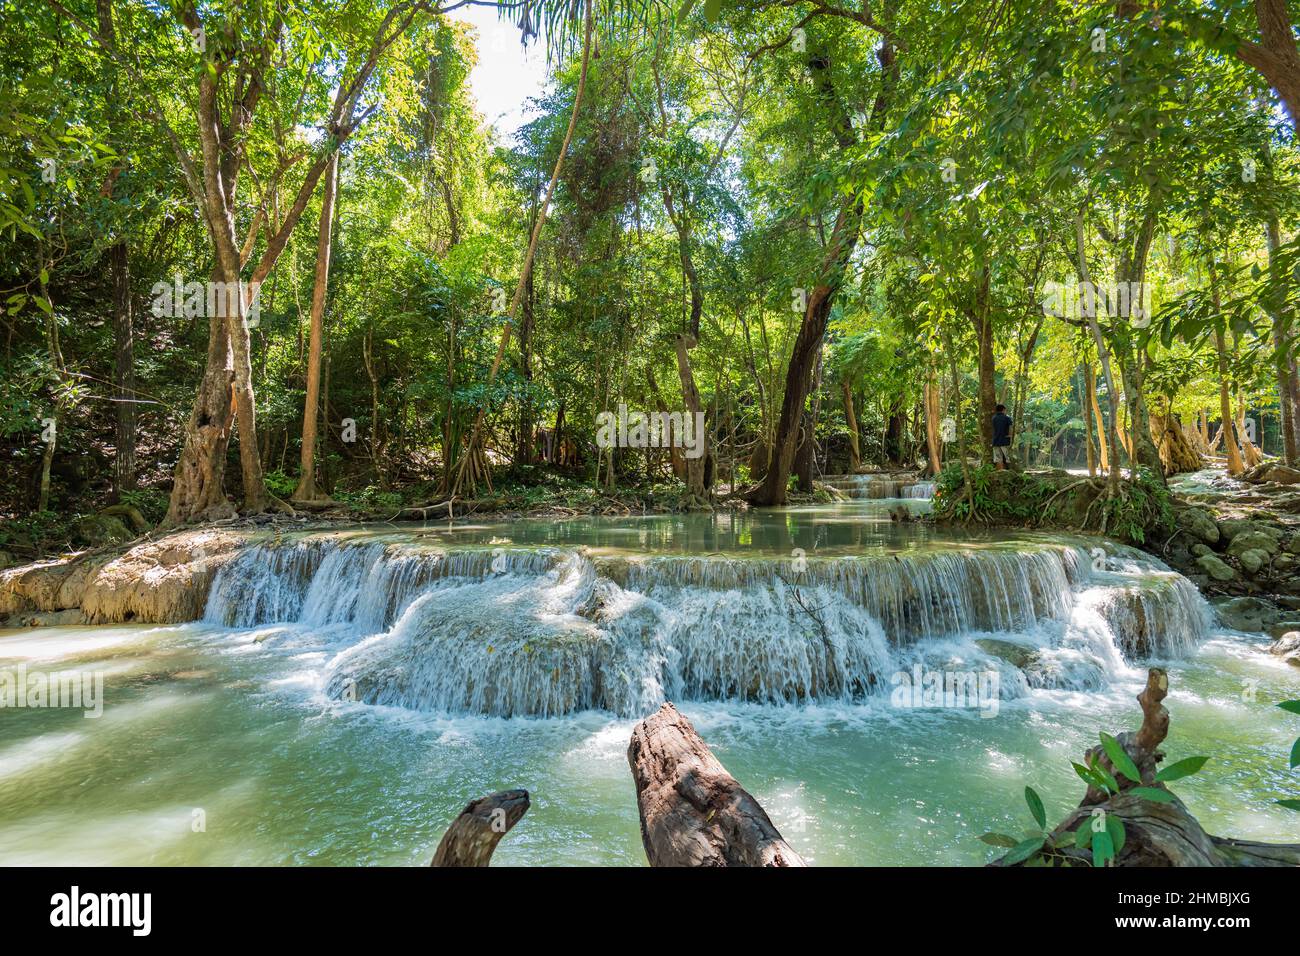 Parque Nacional Erawan en Tailandia. La cascada Erawan es un destino turístico popular y famoso por sus aguas azul esmeralda. Bosque profundo en los trópicos Foto de stock